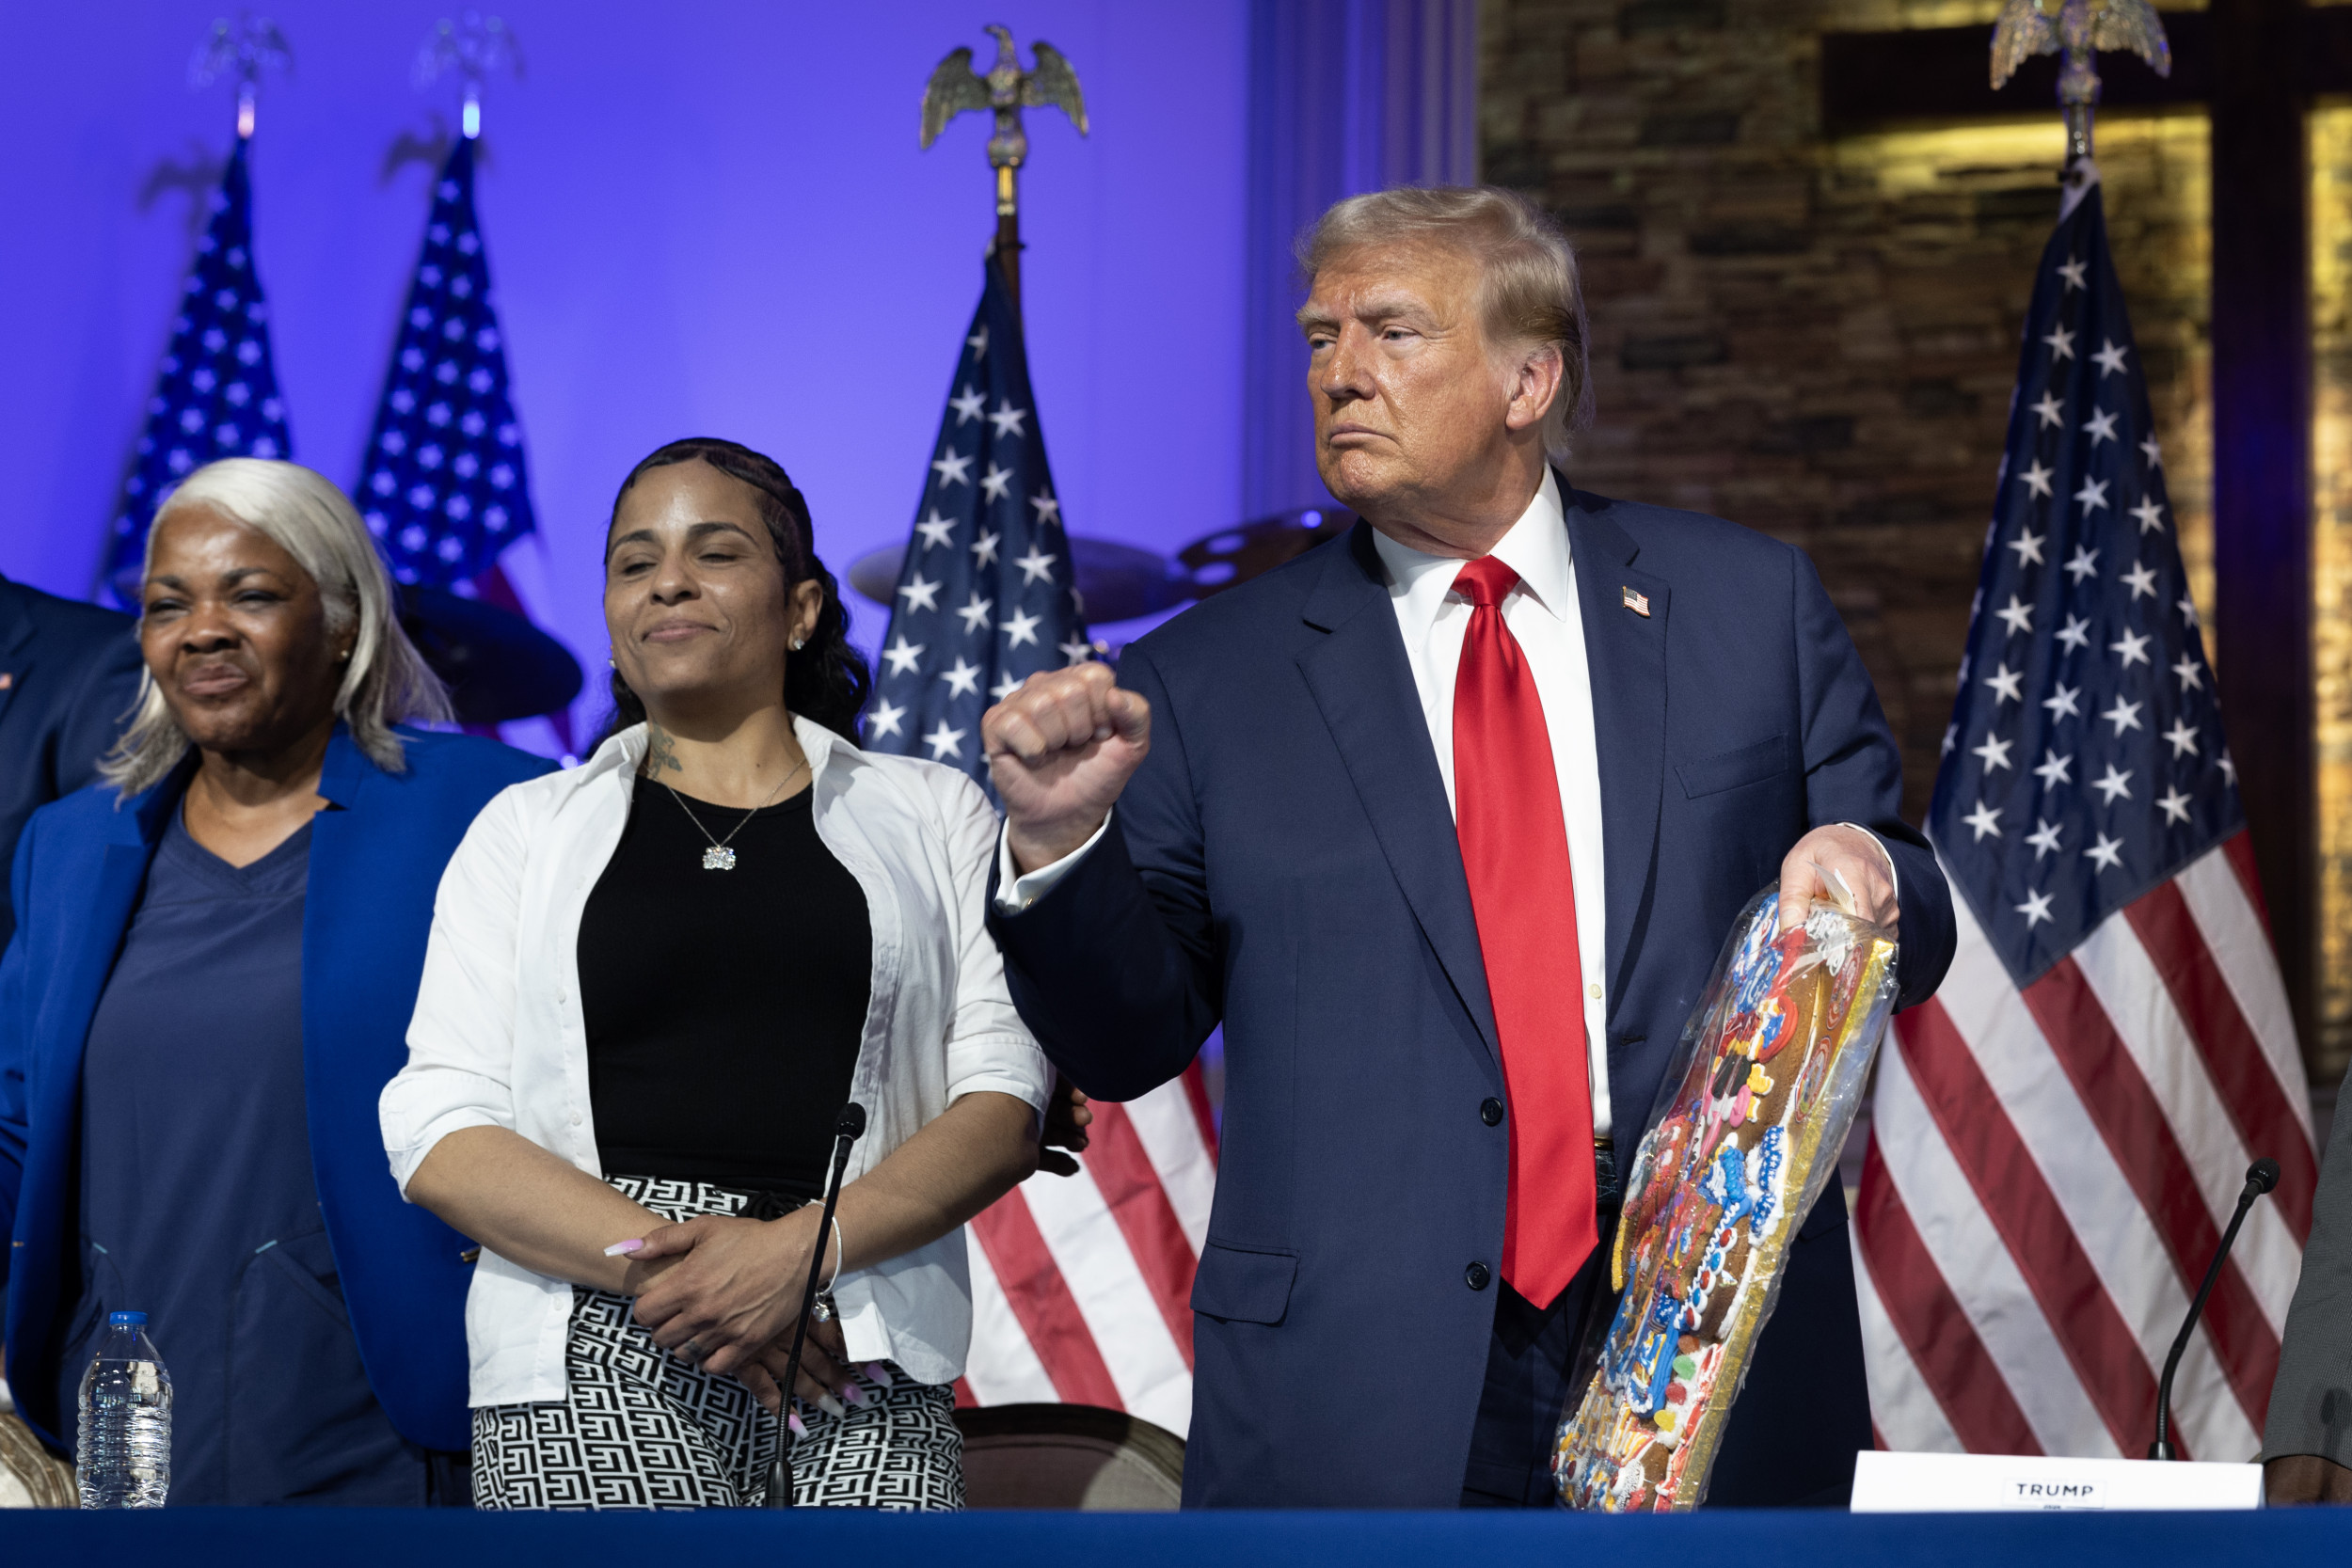 La foule de Donald Trump à l’église noire de Détroit fait sourciller